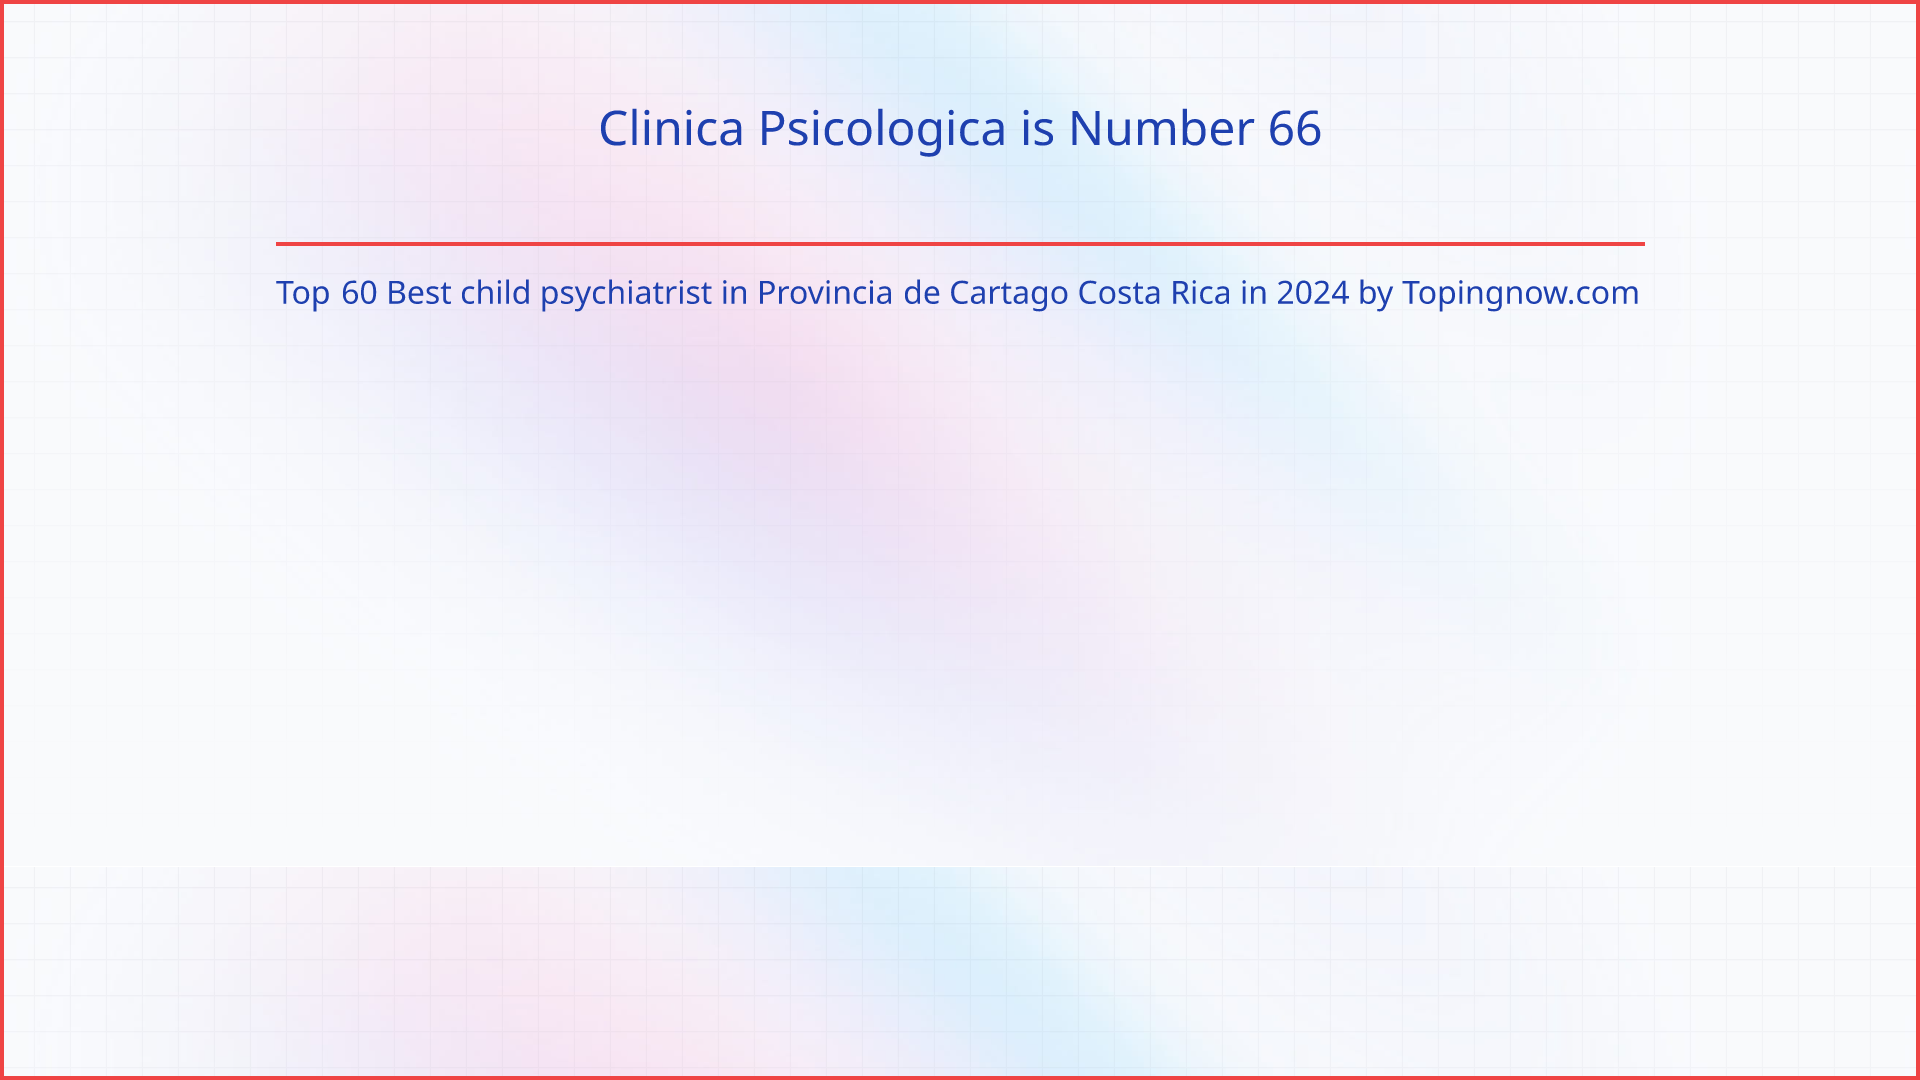 Clinica Psicologica: Top 60 Best child psychiatrist in Provincia de Cartago Costa Rica in 2024